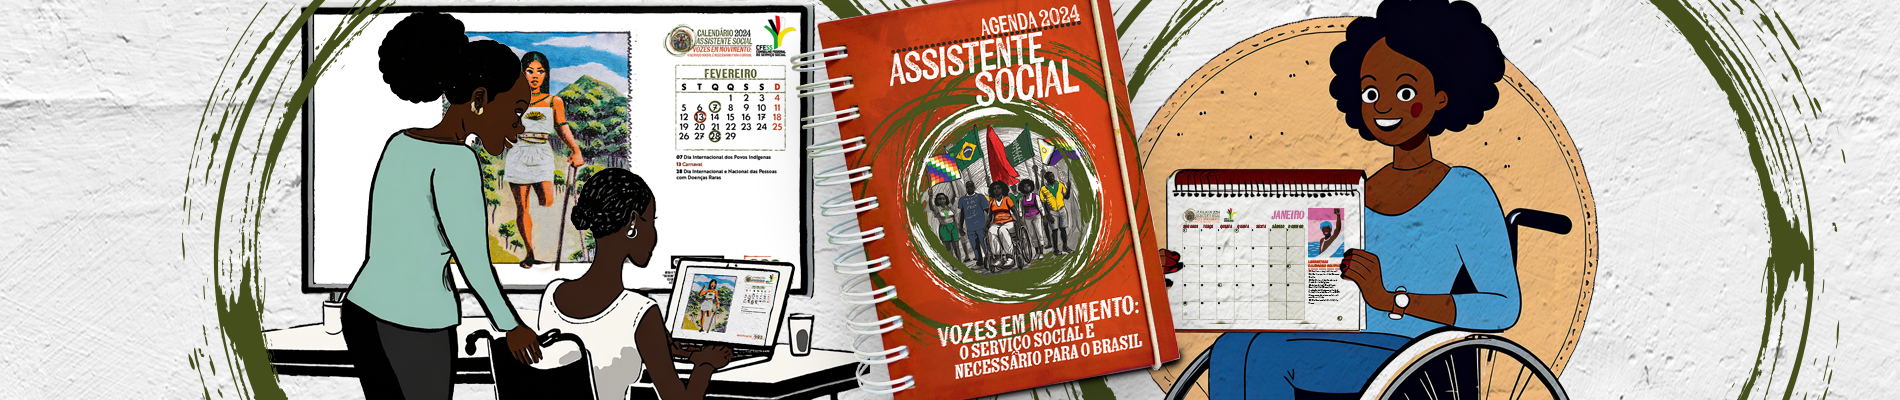 Agenda e Planejador 2024 Assistente Social! Saiba como adquirir e baixe o material digital